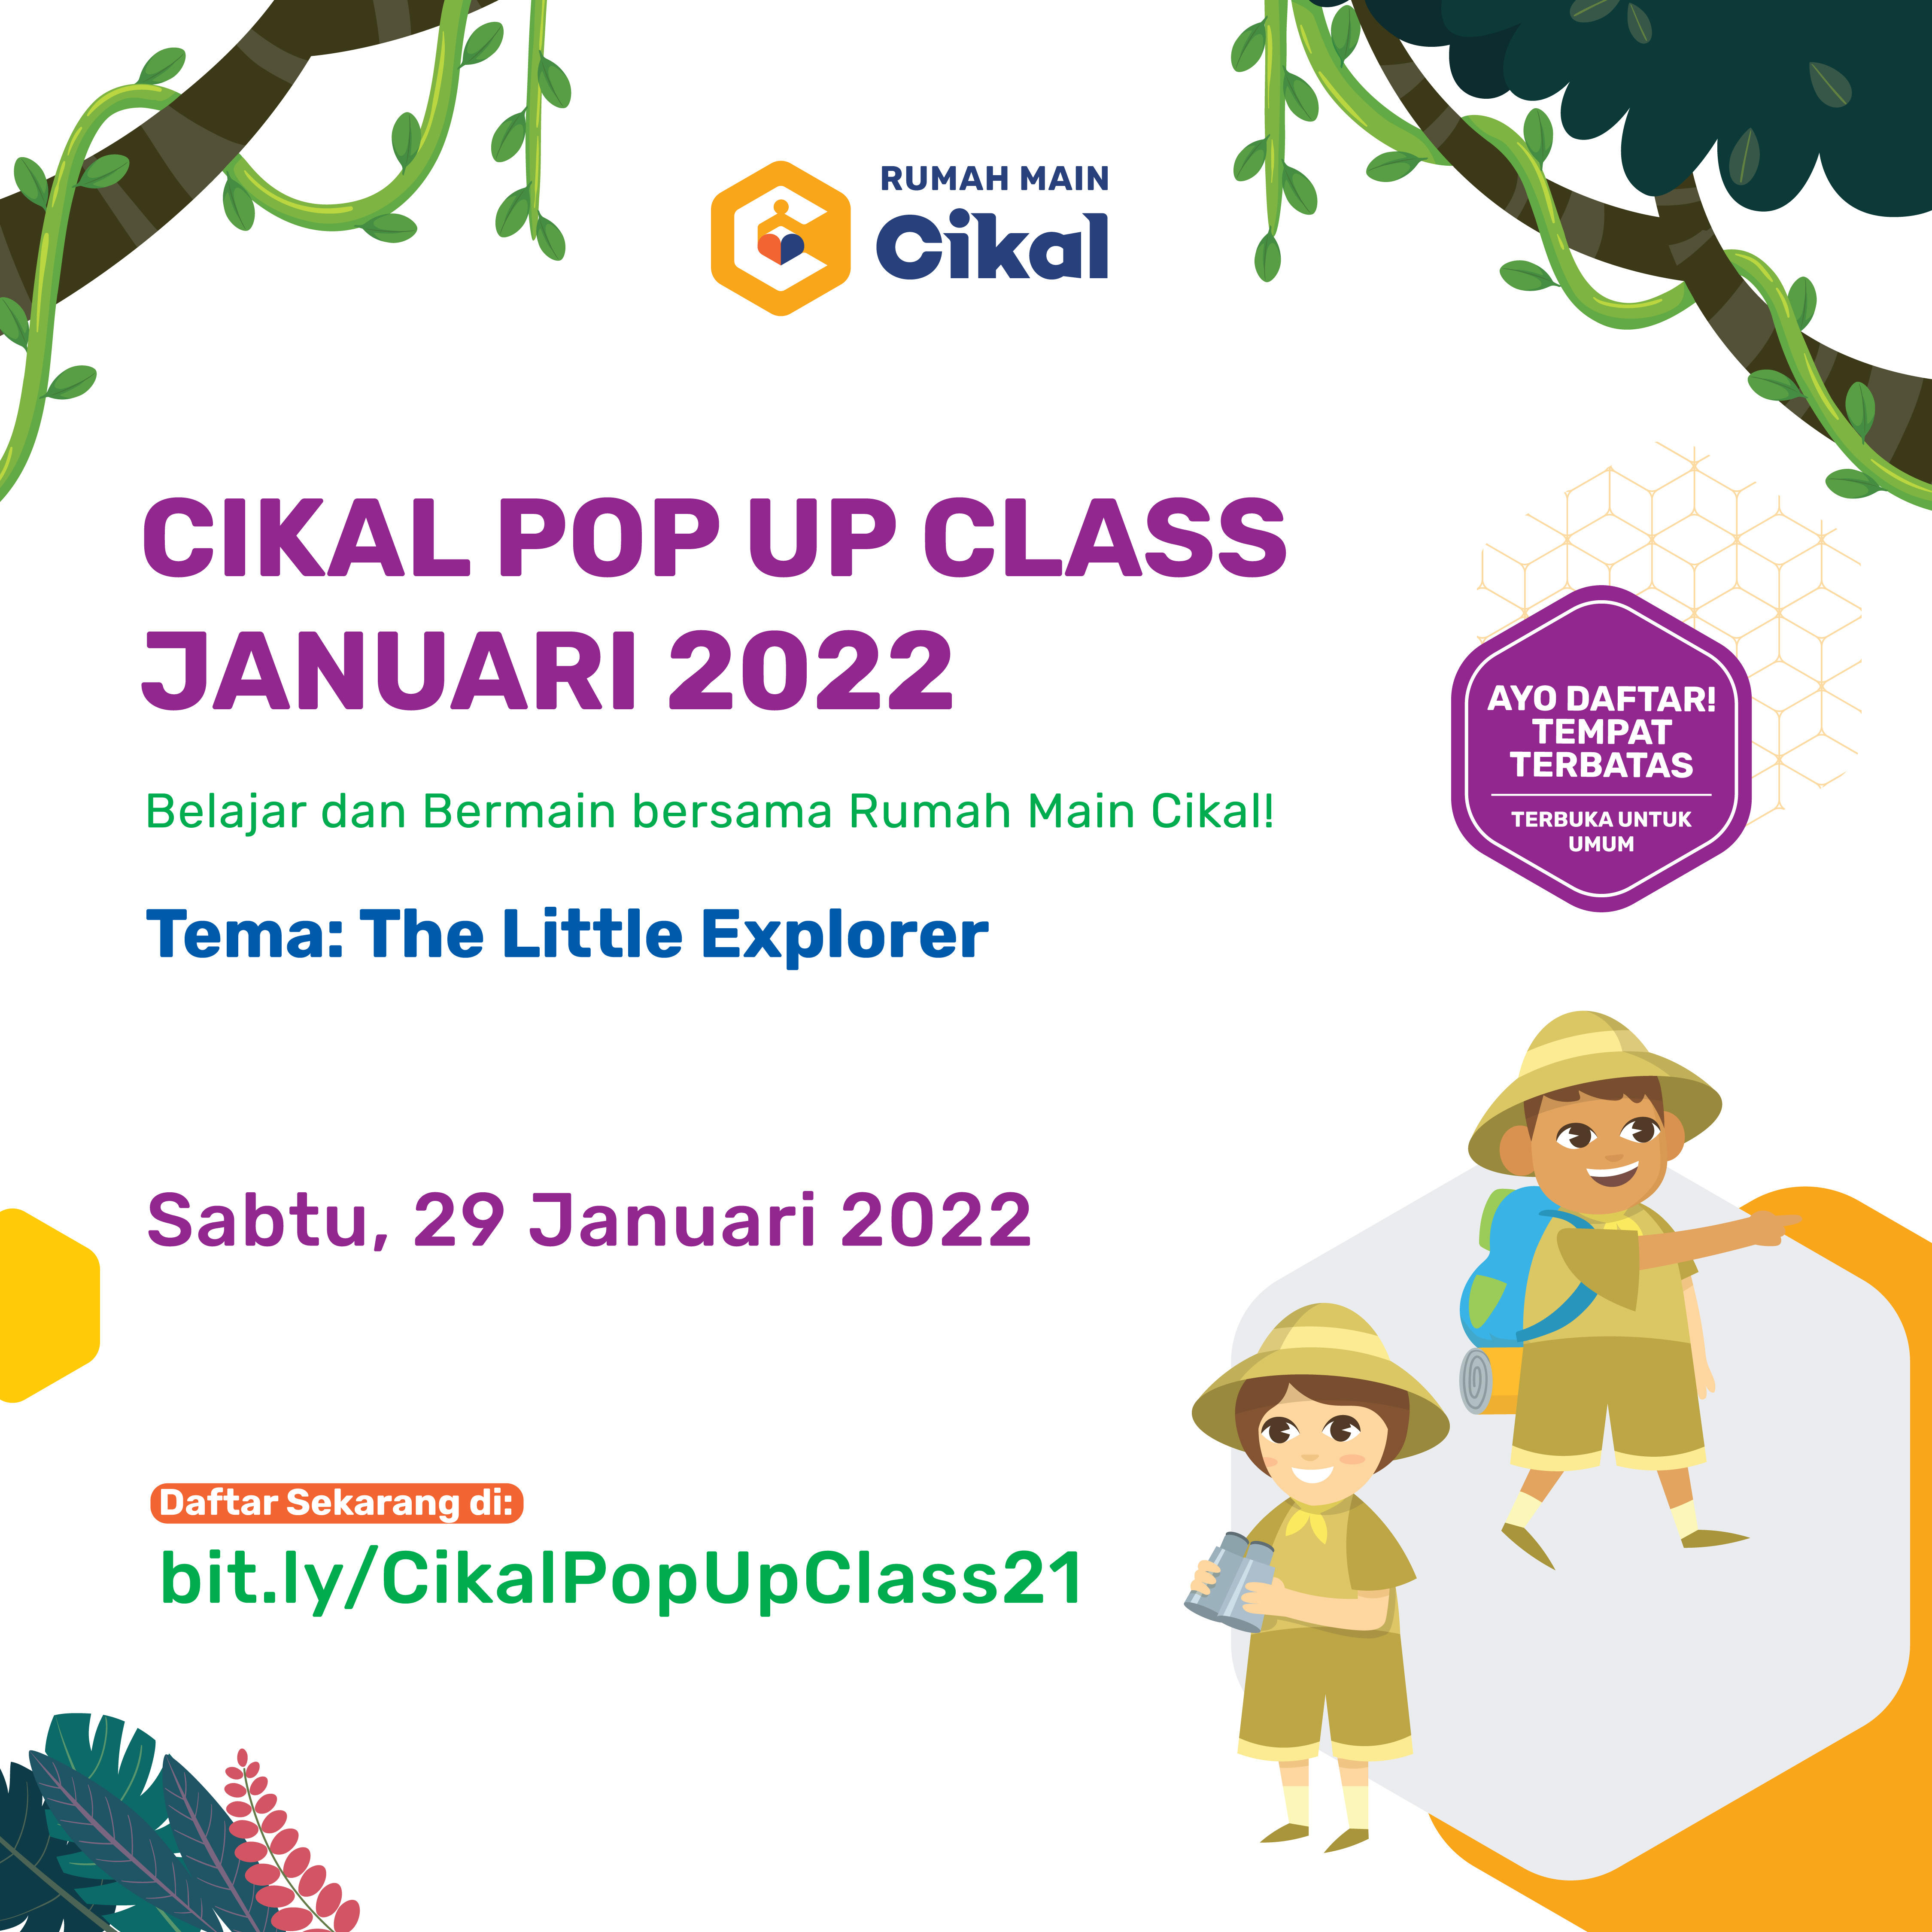 Cikal Pop Up Class "The Little Explorer" Januari 2022